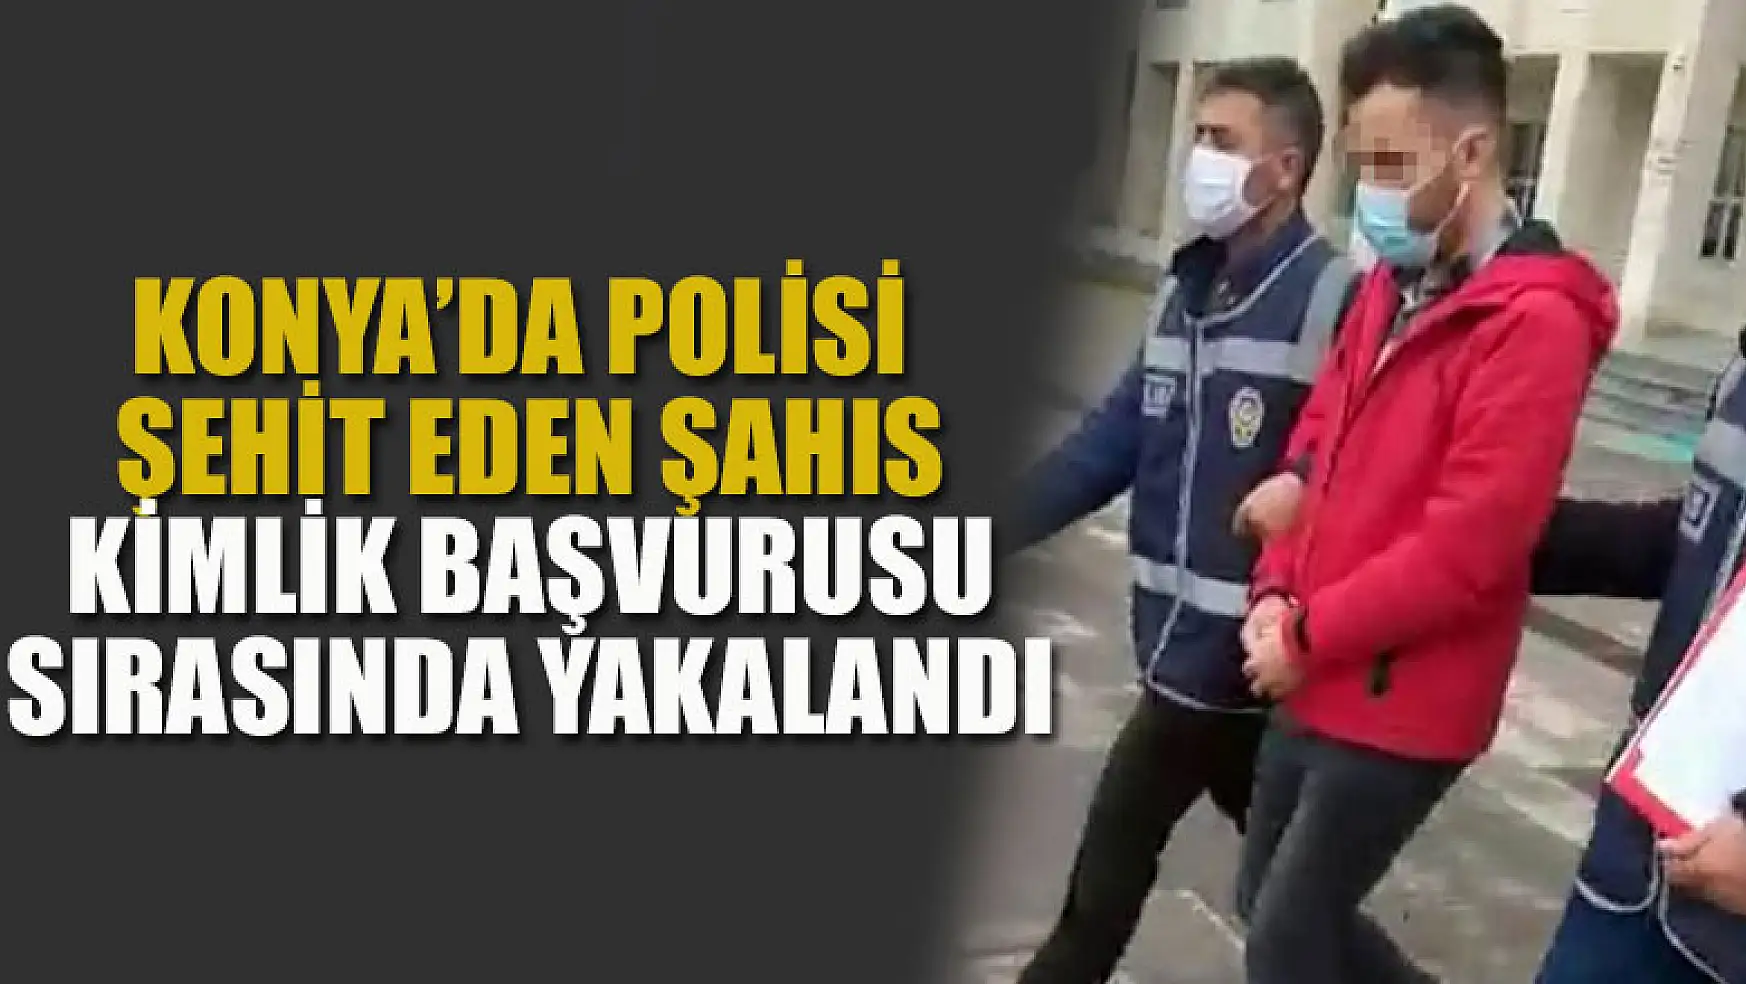 Konya'da polisi şehit eden şahıs, kimlik başvurusu sırasında yakalandı